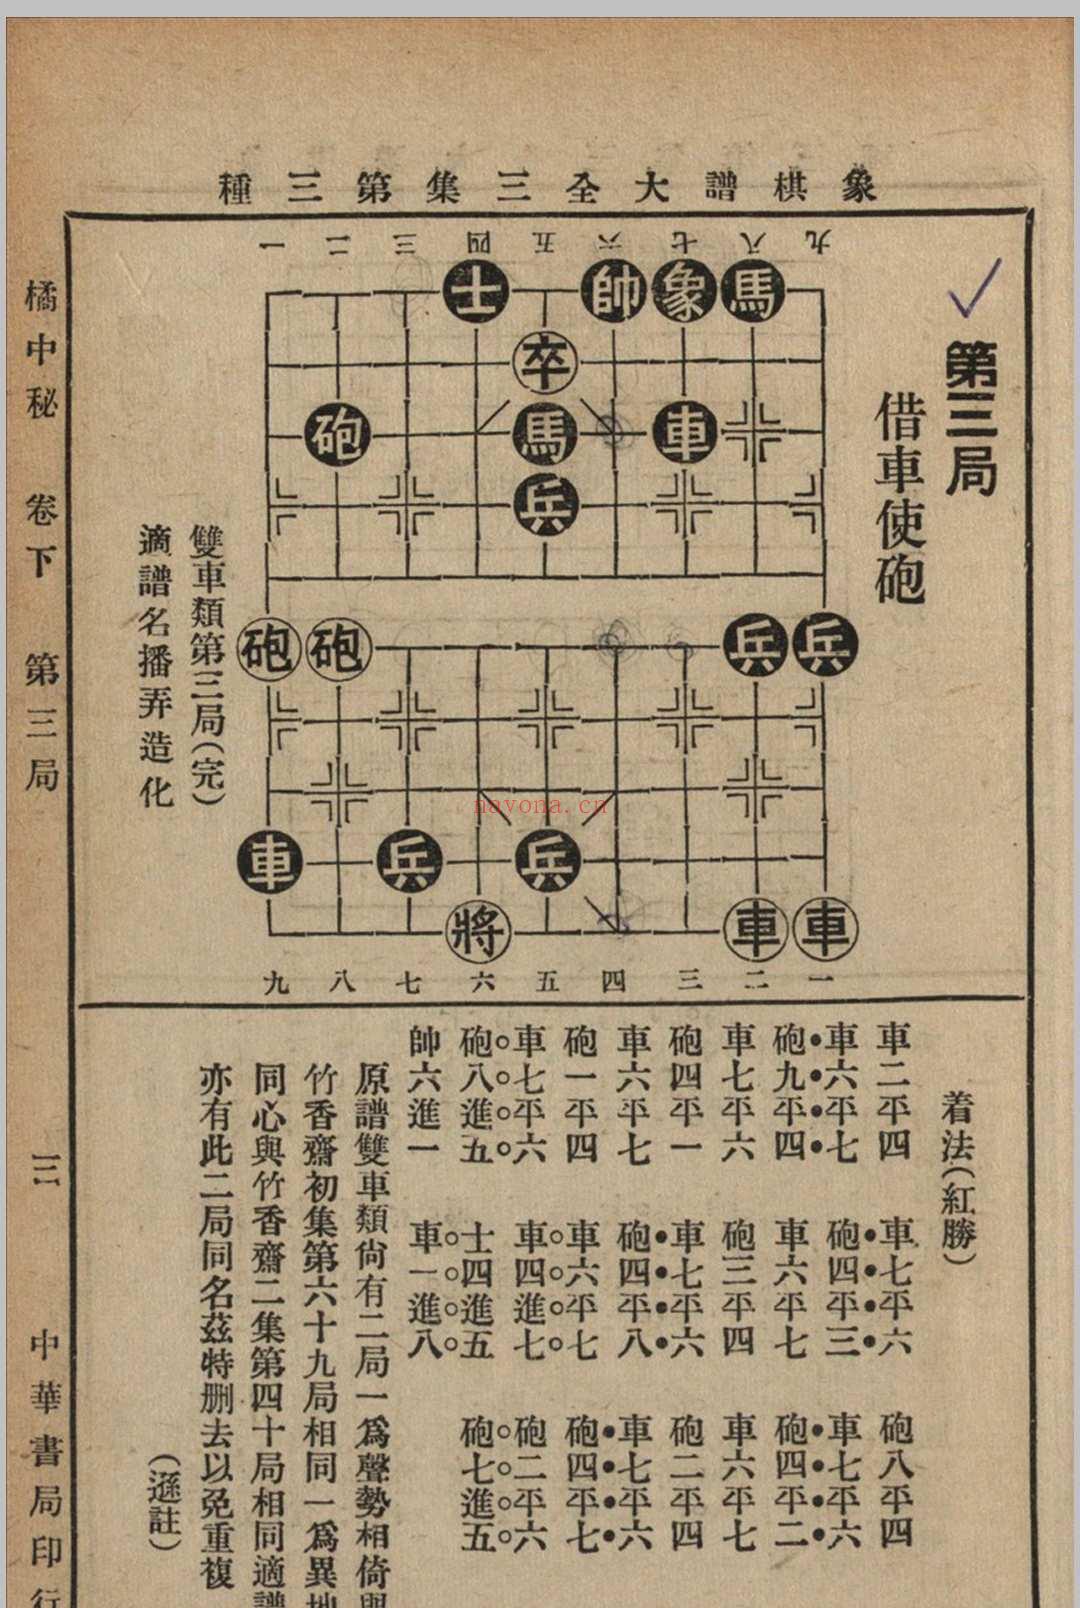 象棋谱大全 三集 谢宣编纂 1940 中华书局 上海